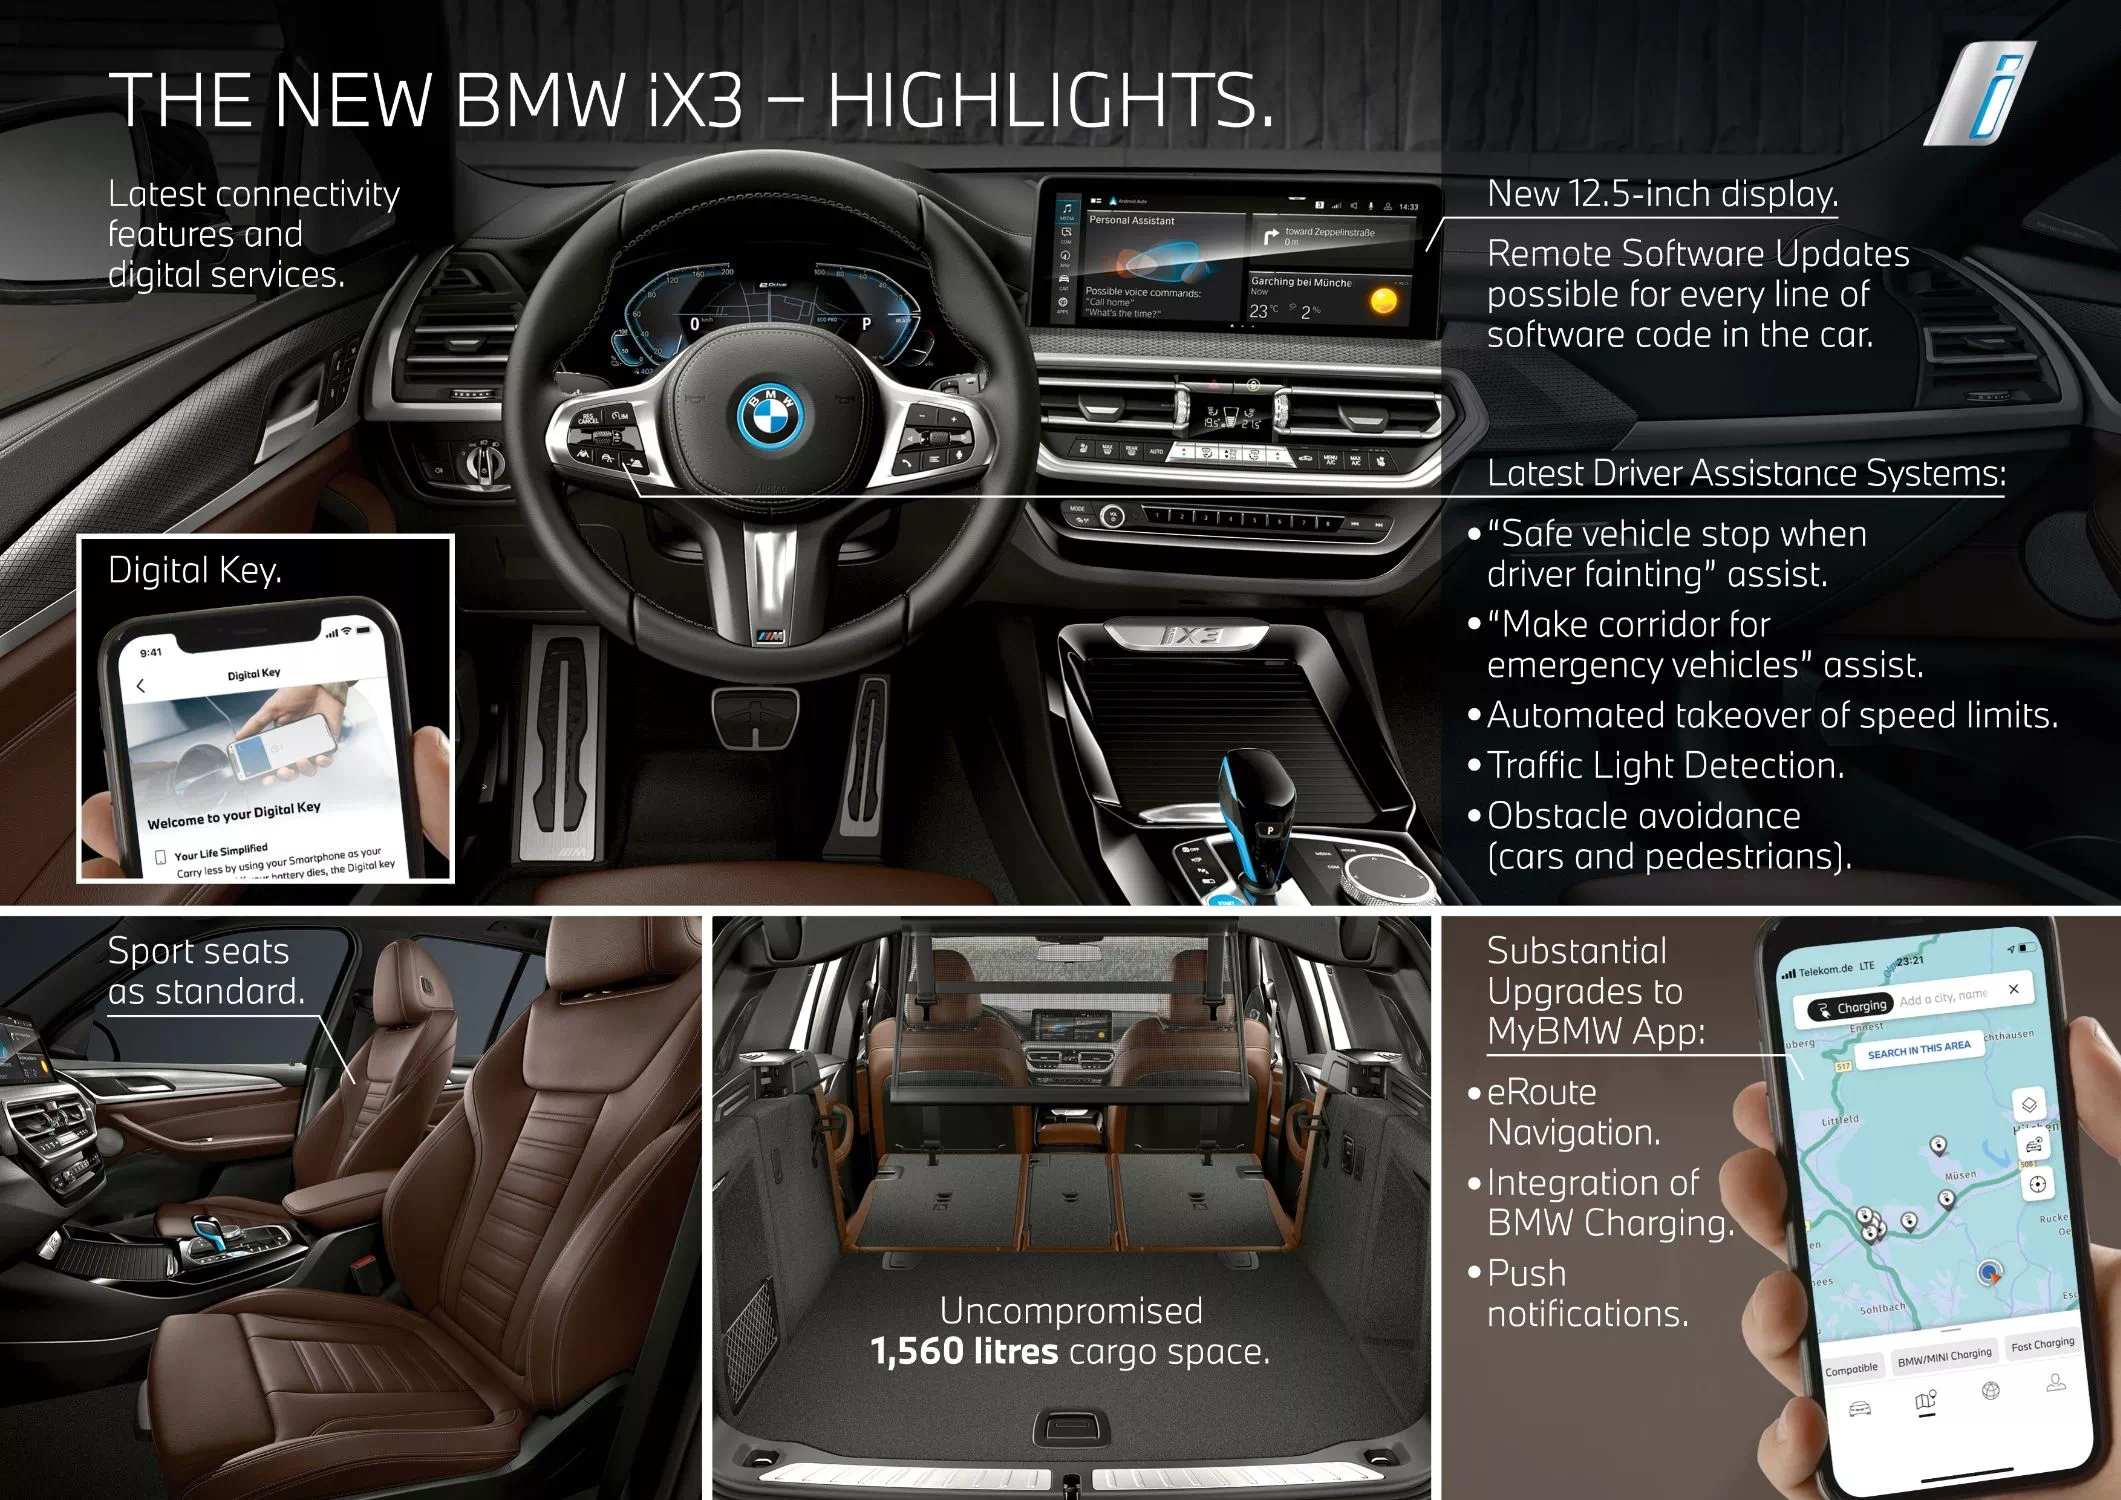 더 뉴 BMW iX3 실내 변경점에 관한 주요 내용입니다.